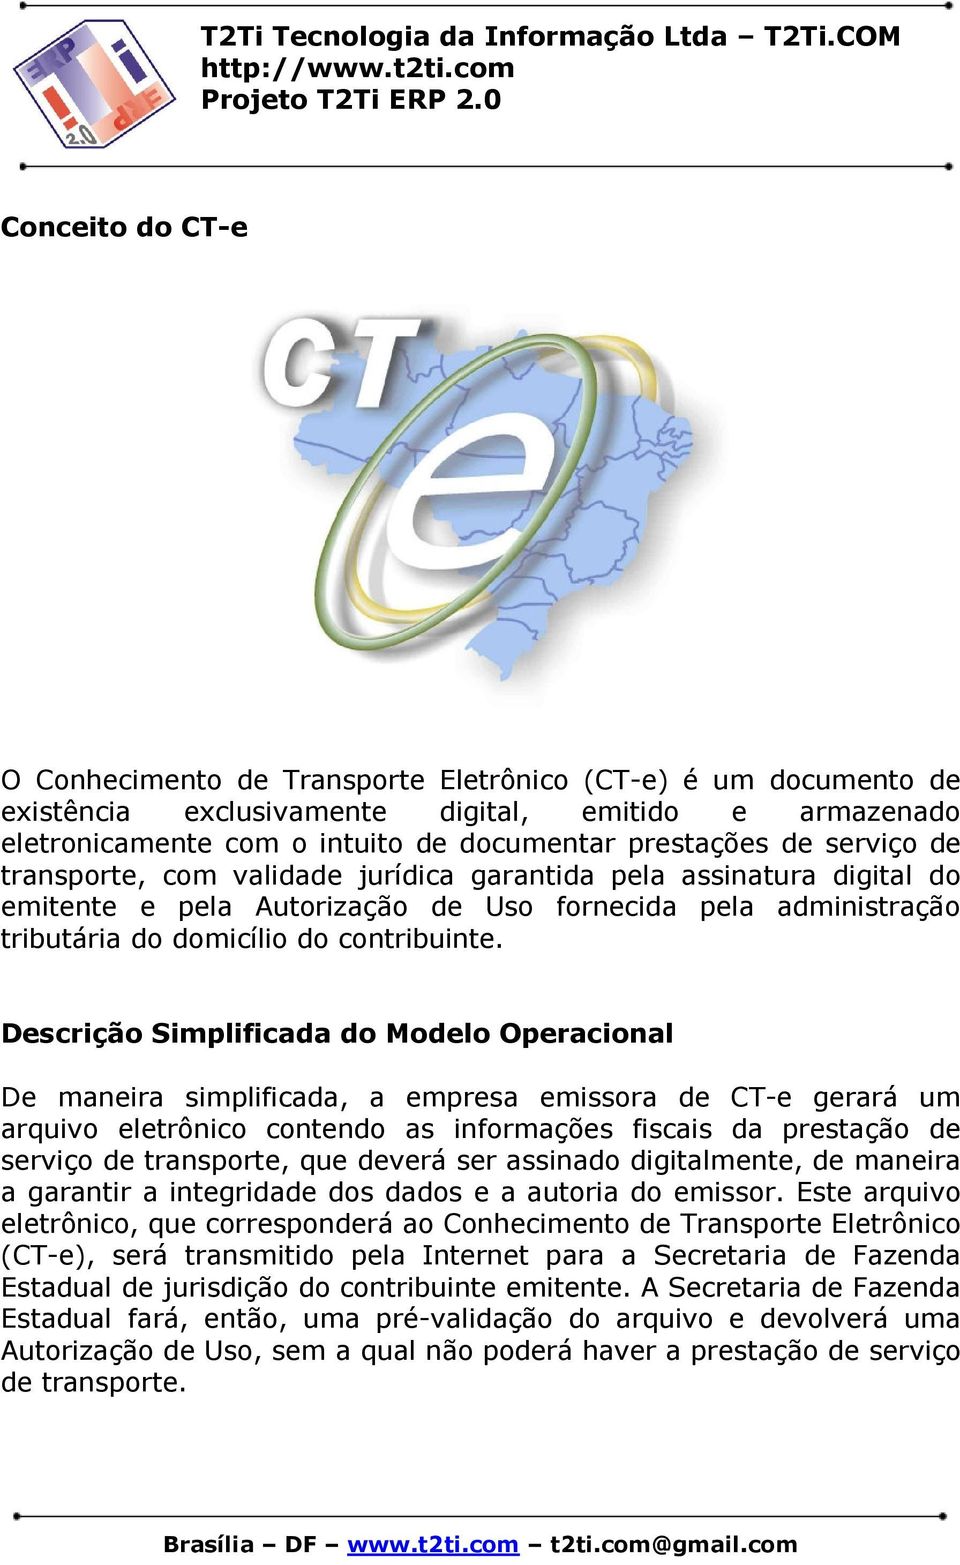 Descrição Simplificada do Modelo Operacional De maneira simplificada, a empresa emissora de CT-e gerará um arquivo eletrônico contendo as informações fiscais da prestação de serviço de transporte,